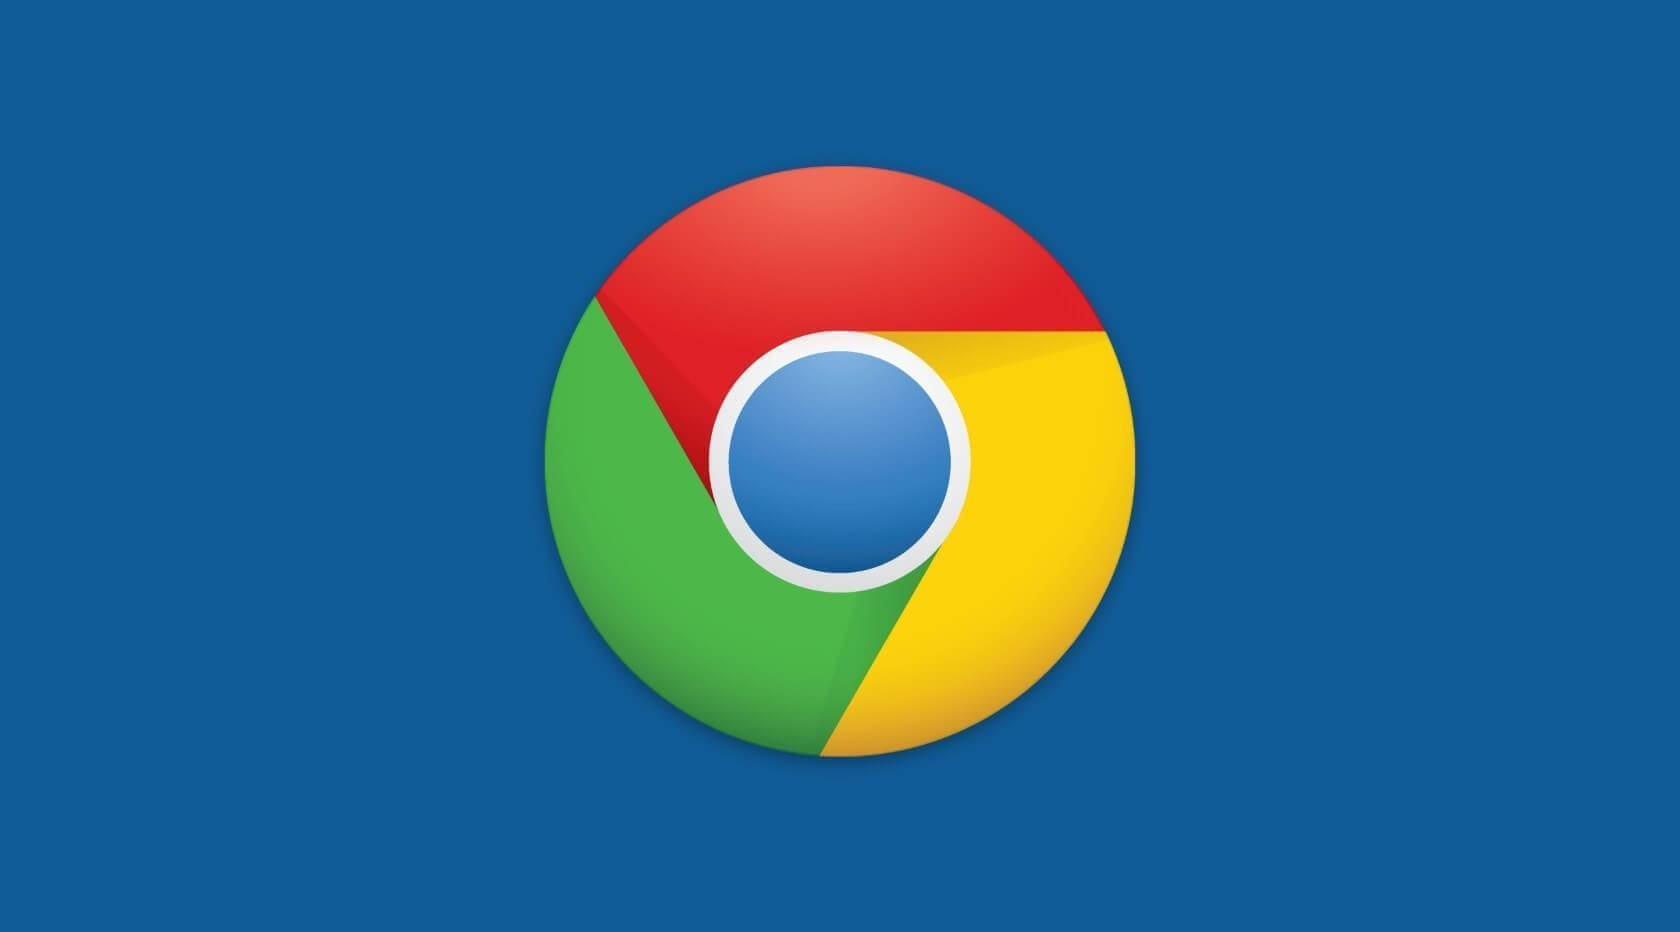 Google is bringing Live Caption to Chrome for desktop